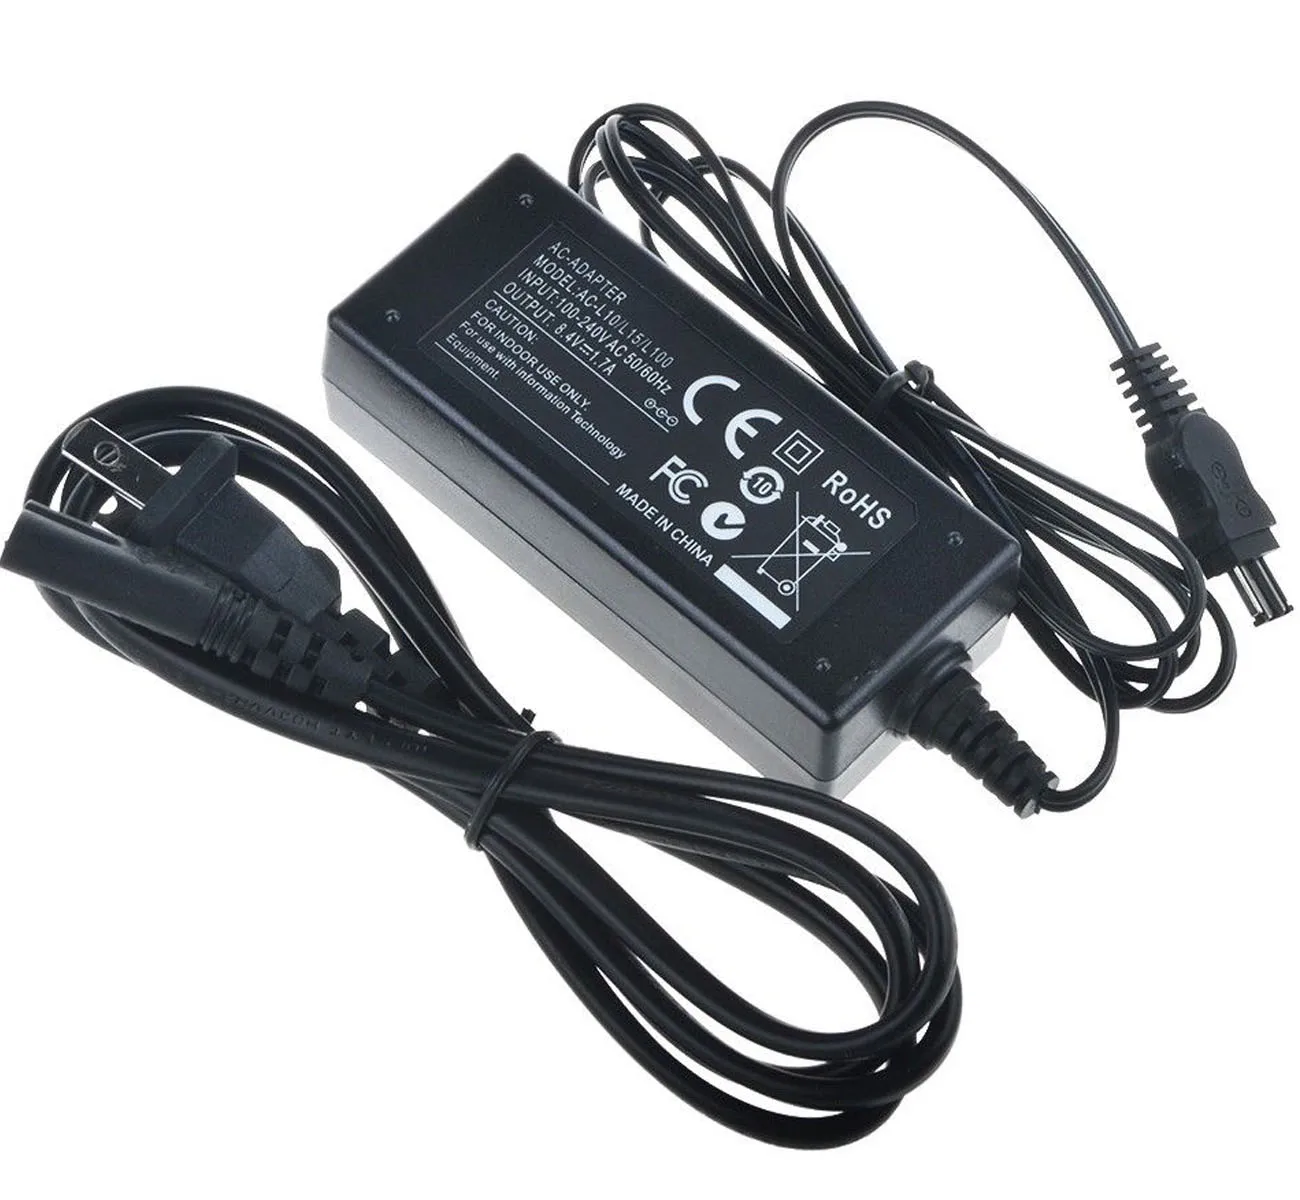 New AC Power Adapter Charger For Sony HandyCam DCR-VX2000 DCR-VX2100 DCR-VX2100E 